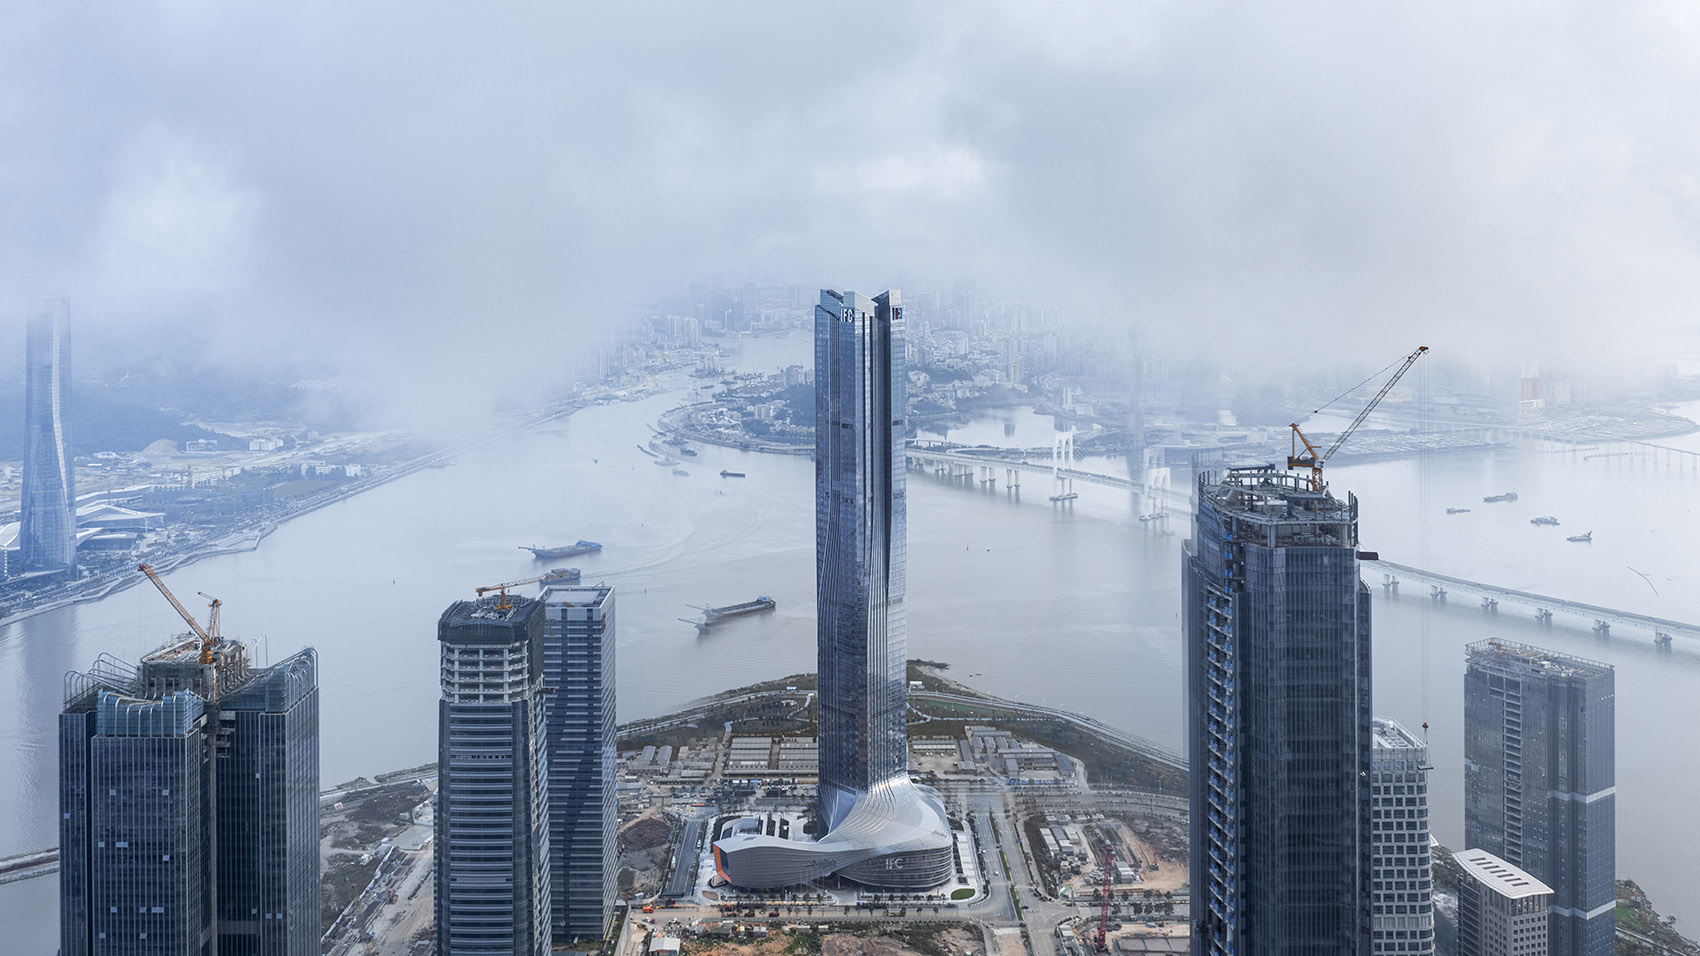 横琴国际金融中心，珠海/珠澳第一高楼，以蛟龙出海打造中国新力量-3